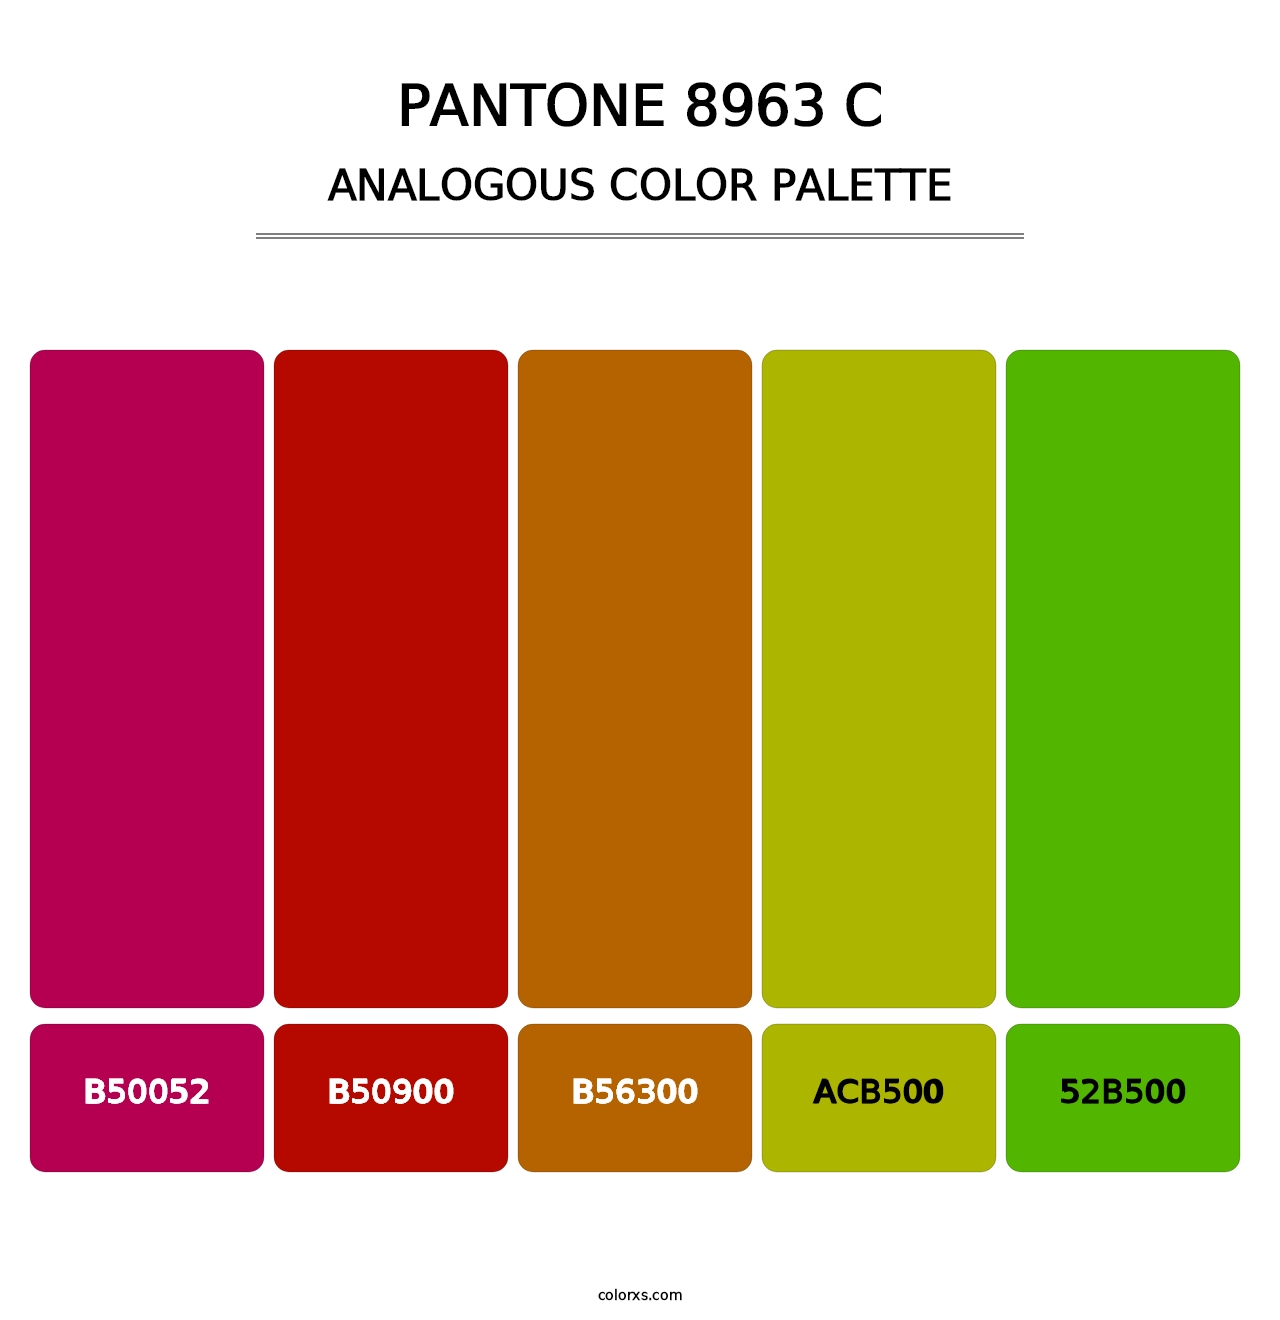 PANTONE 8963 C - Analogous Color Palette